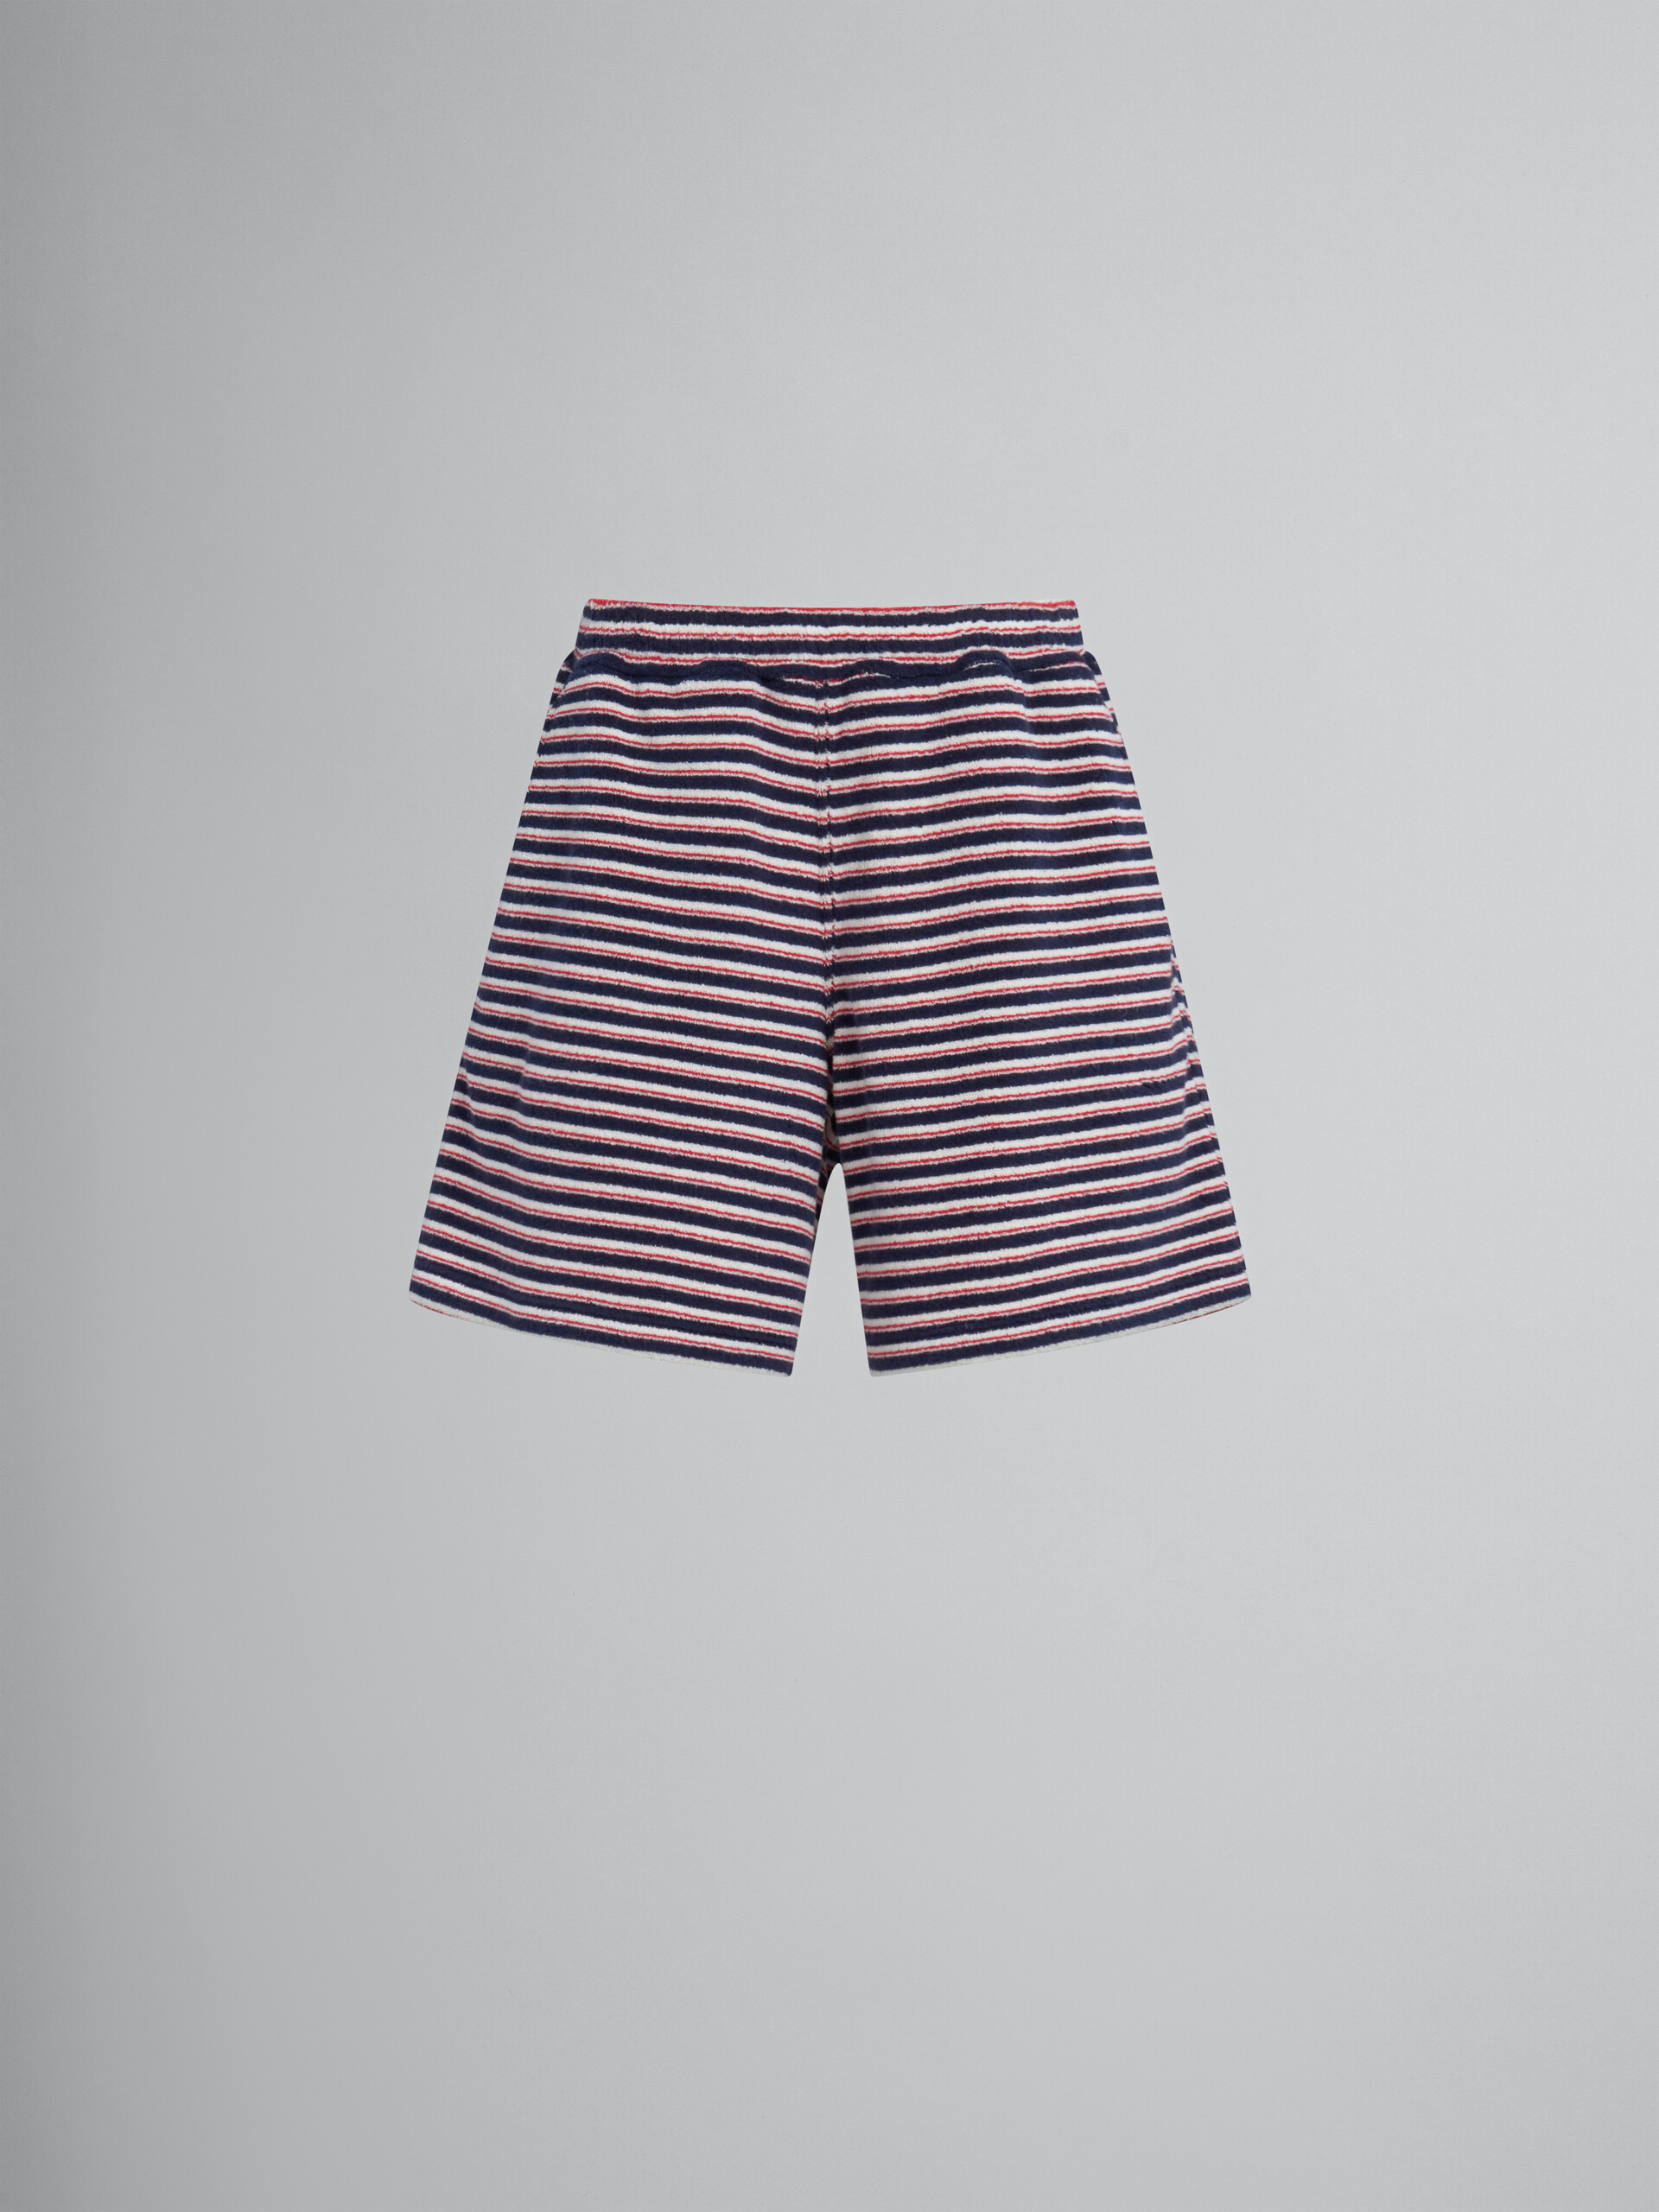 Pantalón corto de felpa a rayas rojas y azules - Pantalones - Image 1